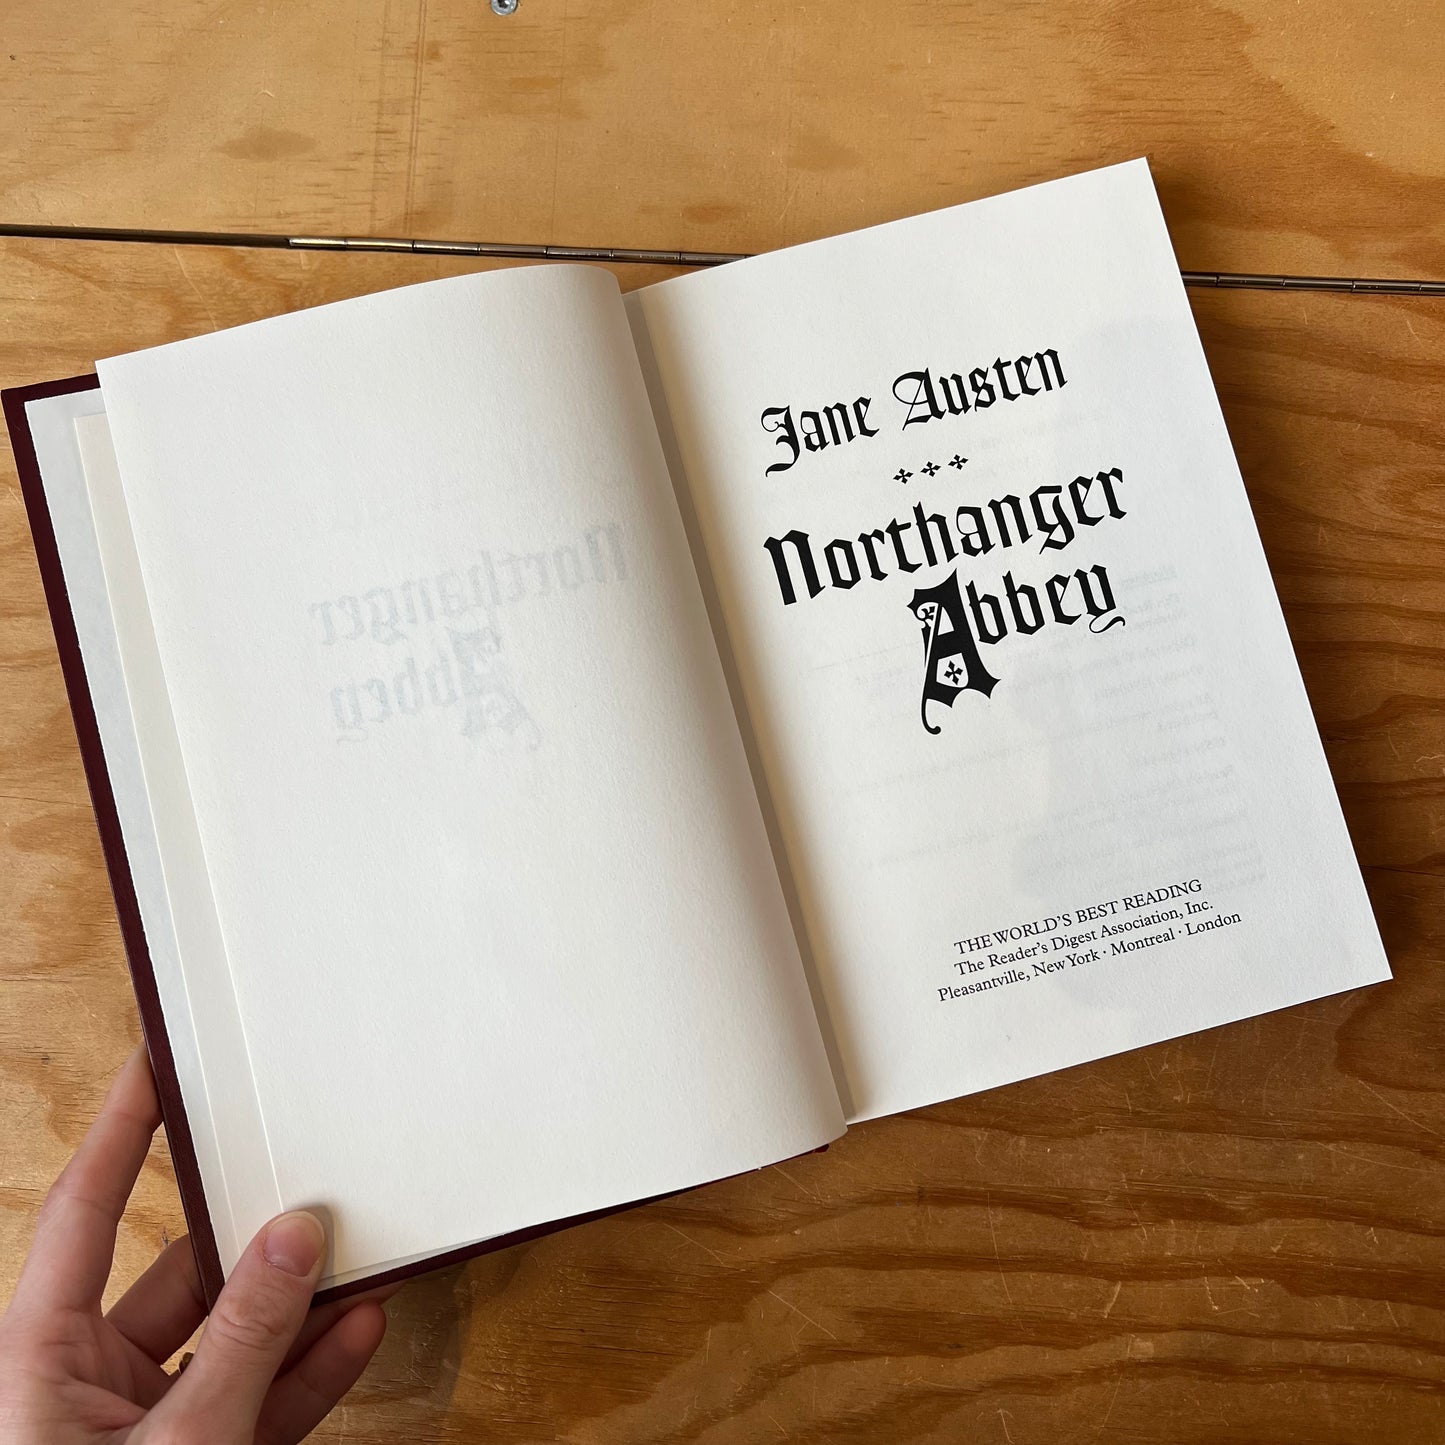 Northanger Abbey – Jane Austen